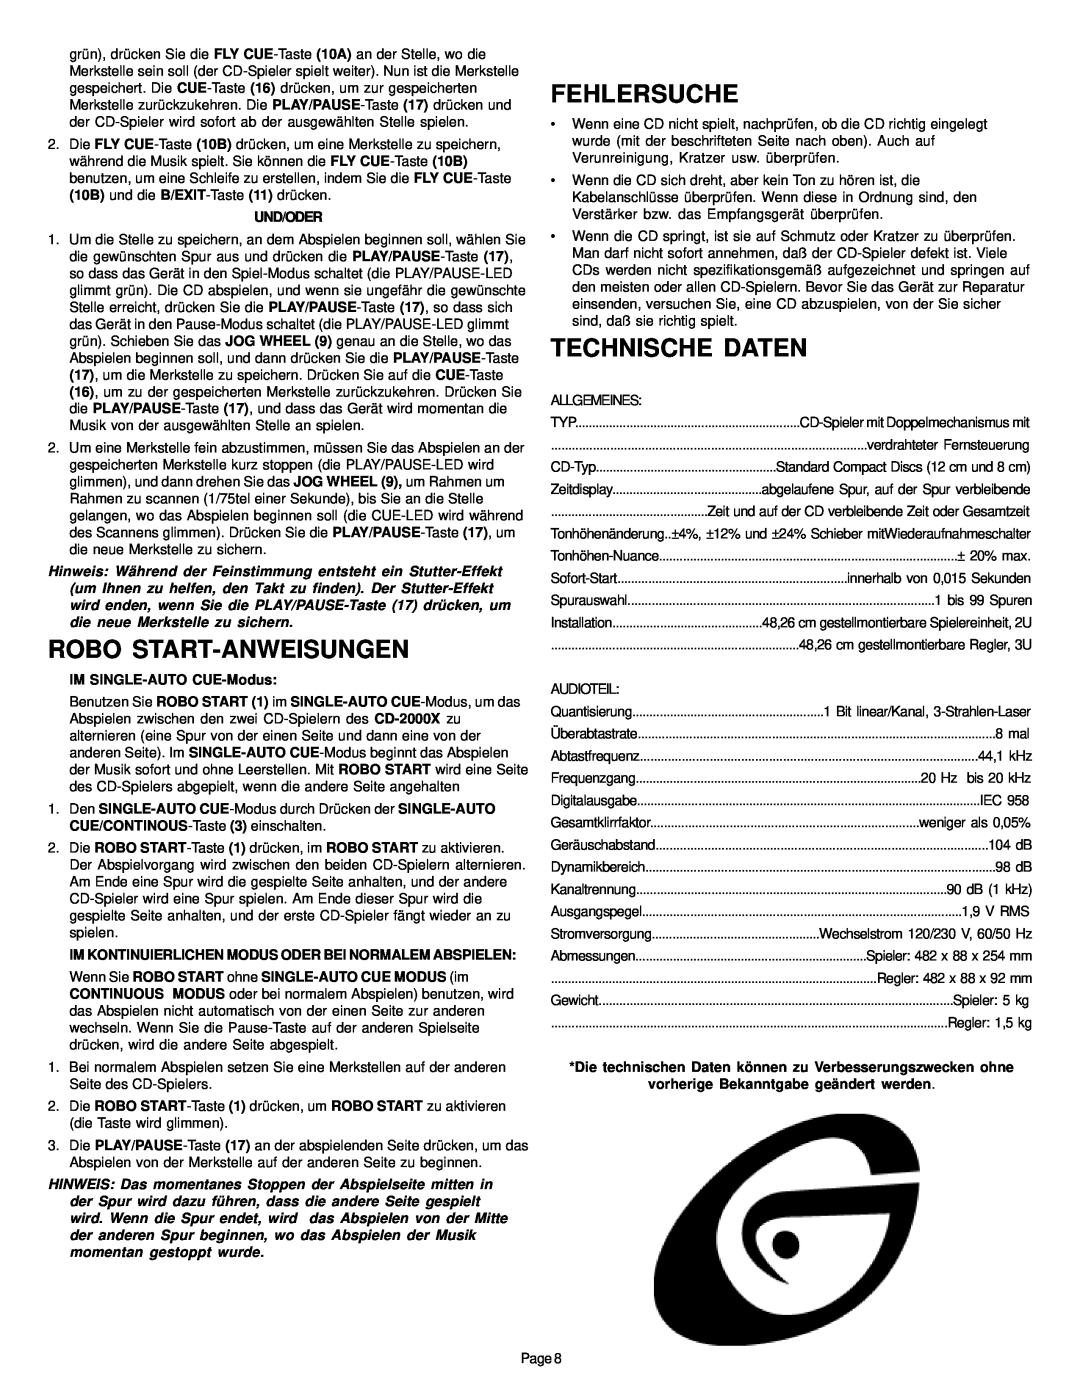 Gemini CD-2000X manual Robo Start-Anweisungen, Fehlersuche, Technische Daten, Und/Oder, IM SINGLE-AUTO CUE-Modus 